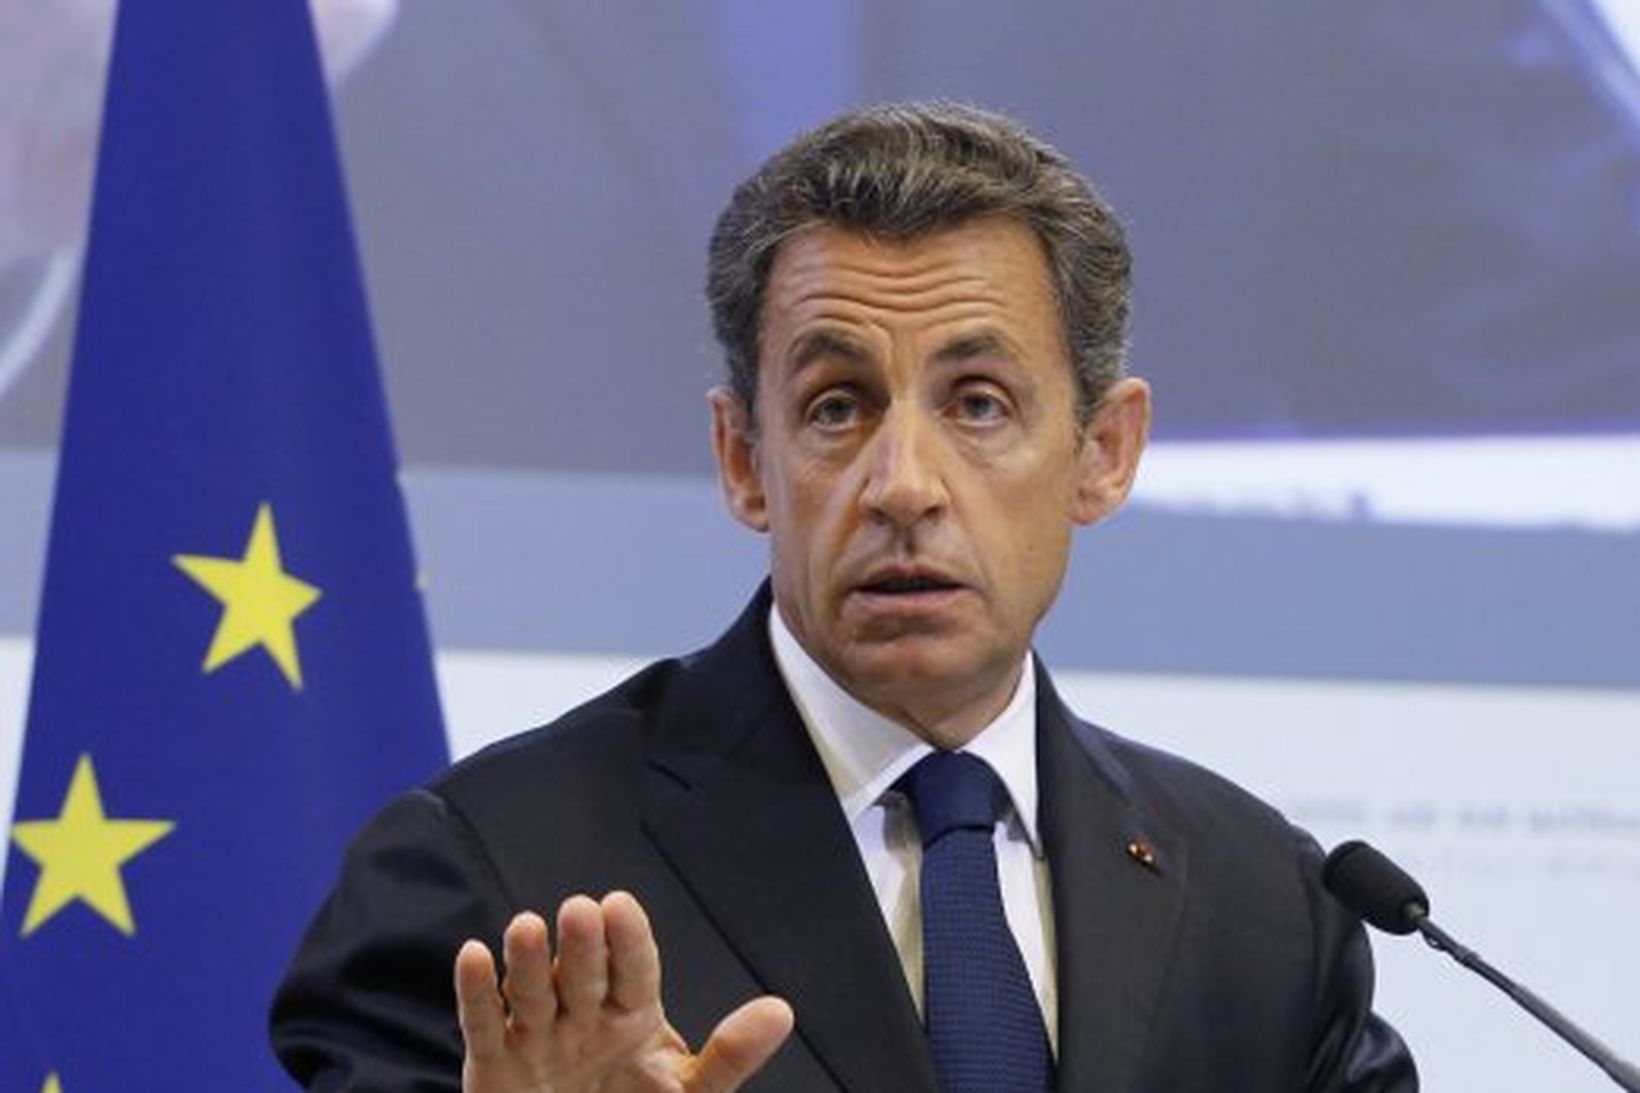 Forseti Frakklands, Nicolas Sarkozy, varar við því að það sama …